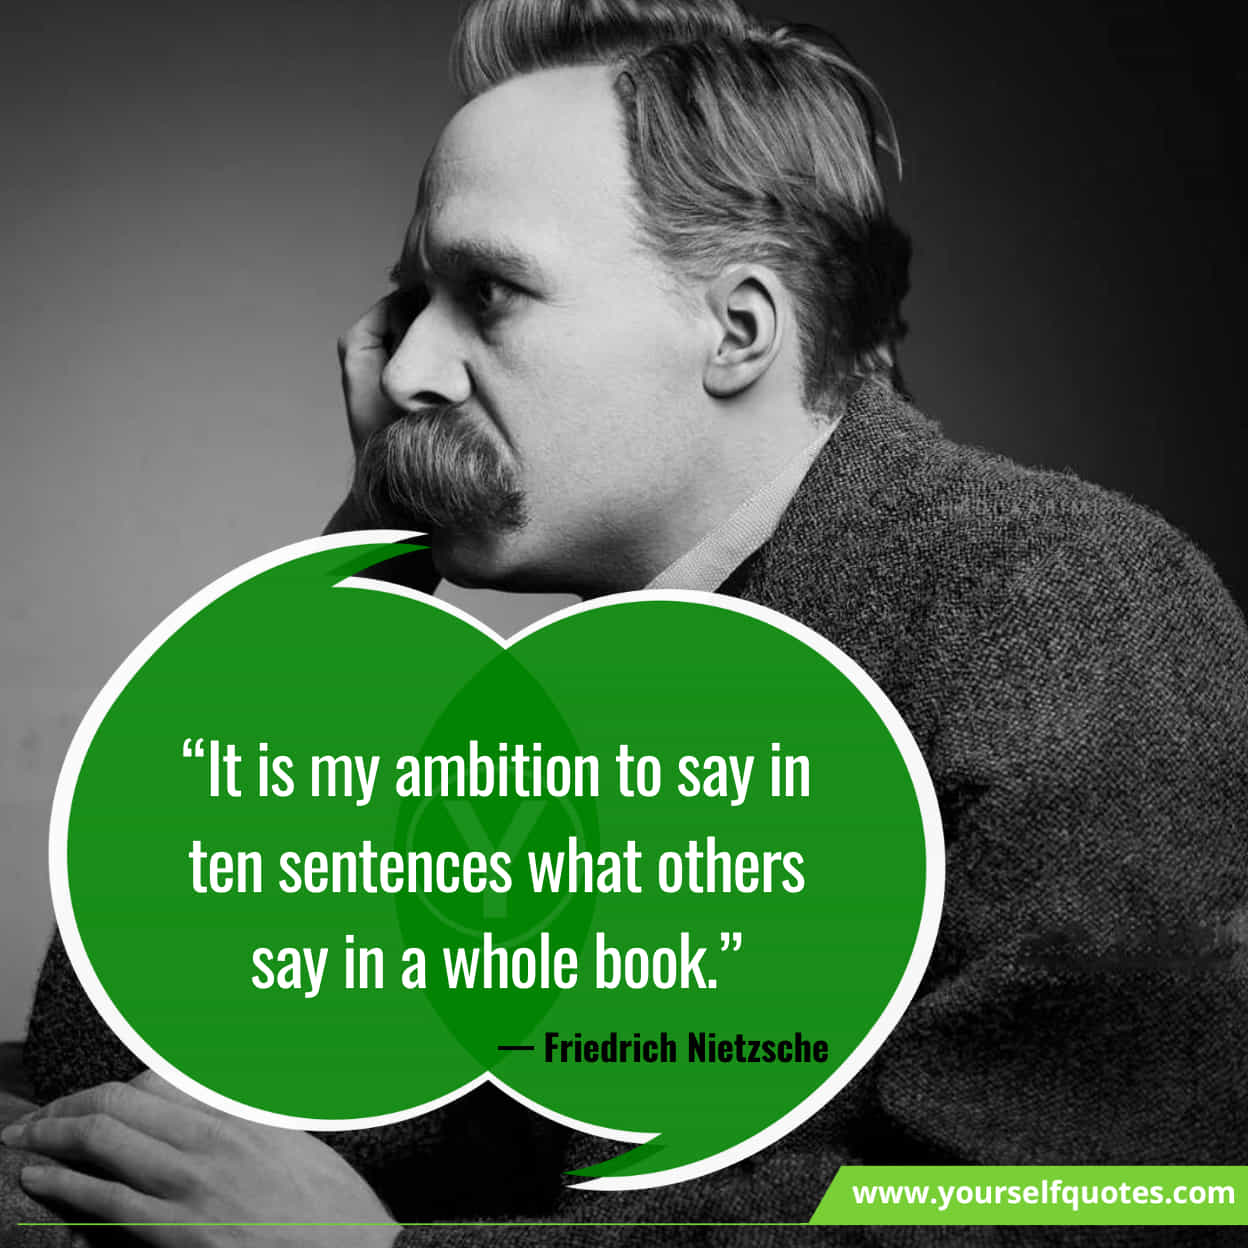 Friedrich Nietzsche Inspiring Life Quotes